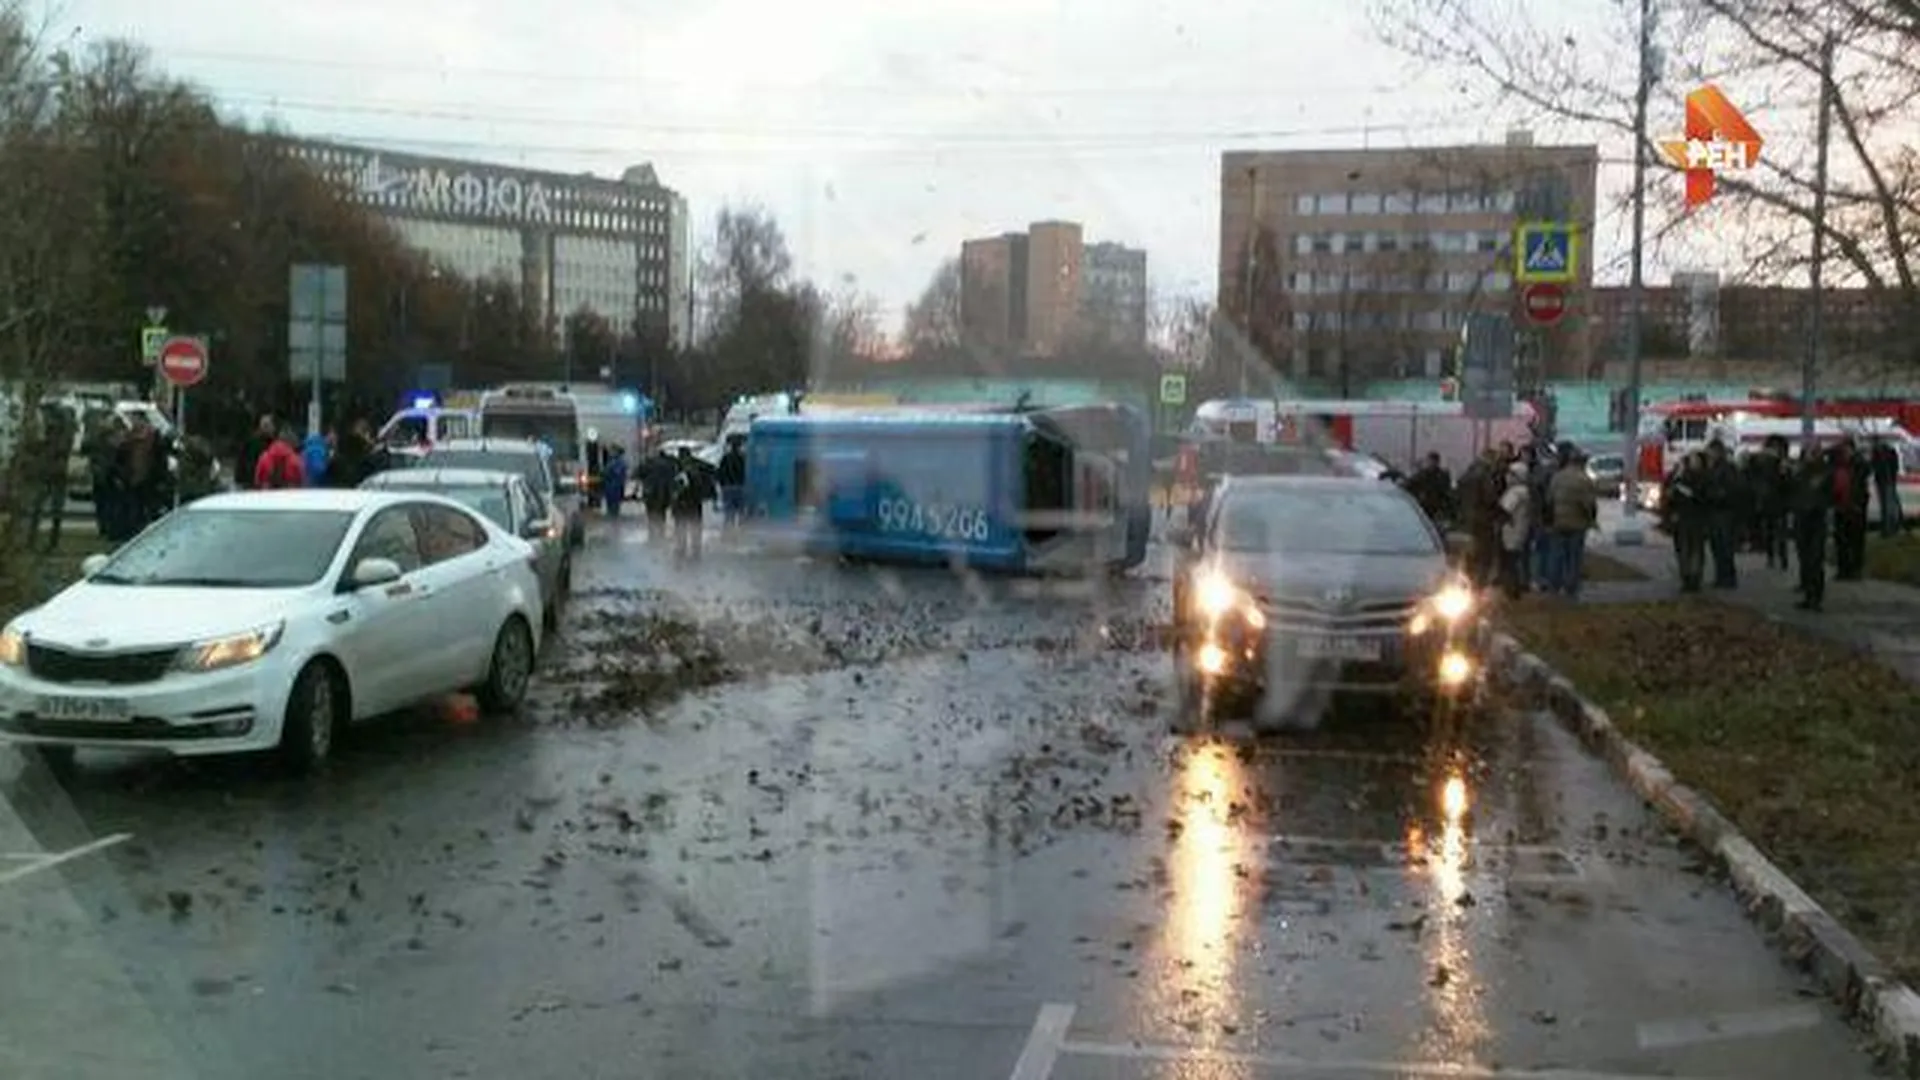 Движение на месте ДТП на улице Обручева в Москве осуществляется в обычном режиме